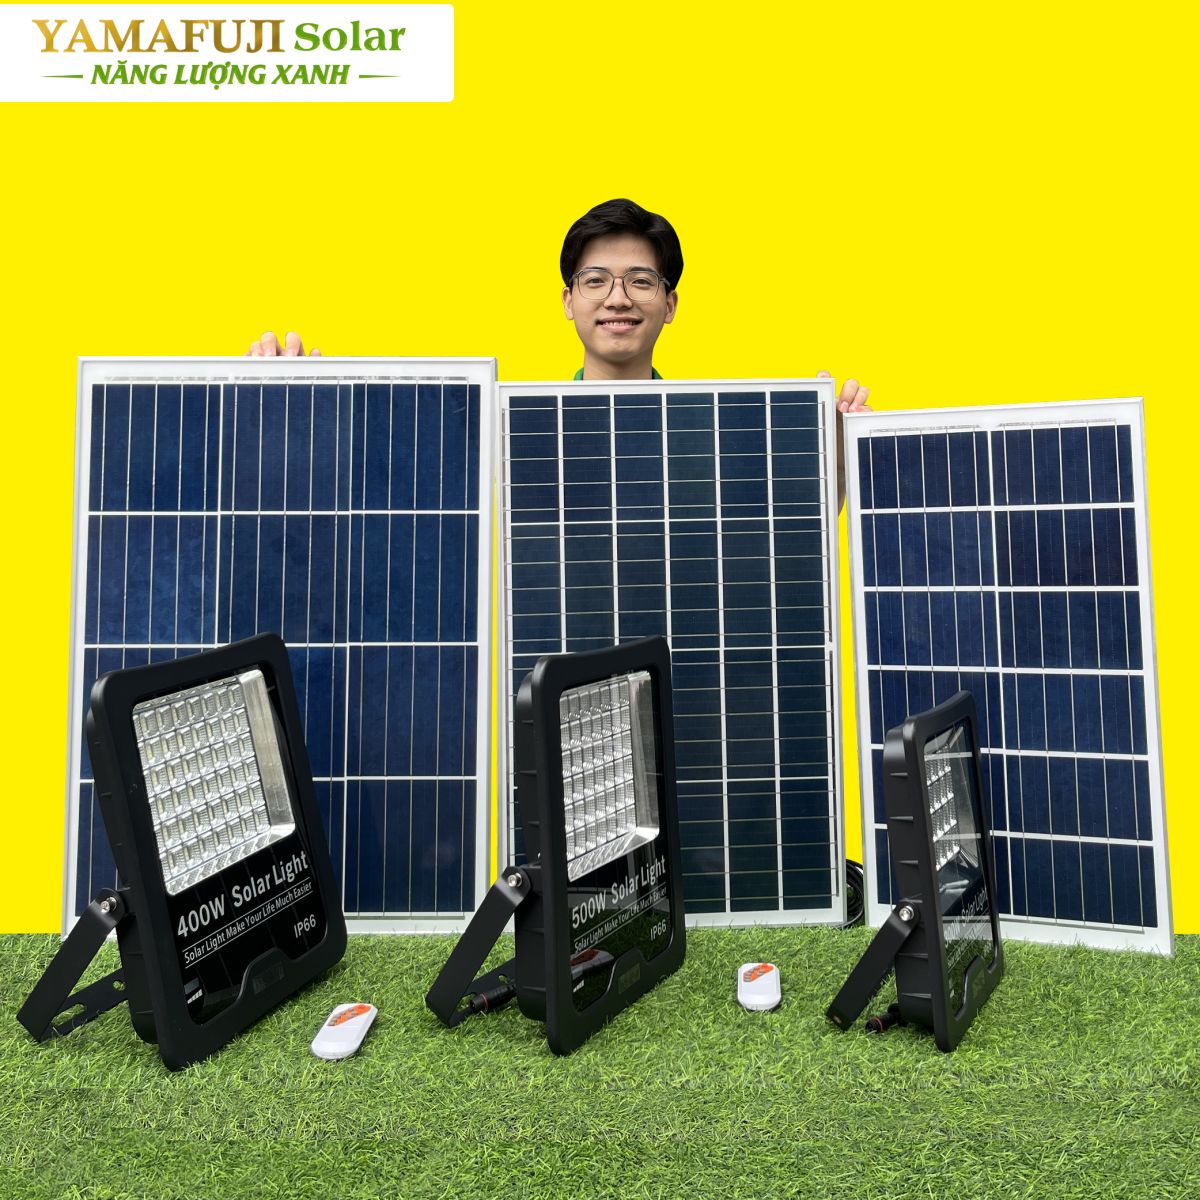 Đèn năng lượng mặt trời Yamafuji Solar SFL02